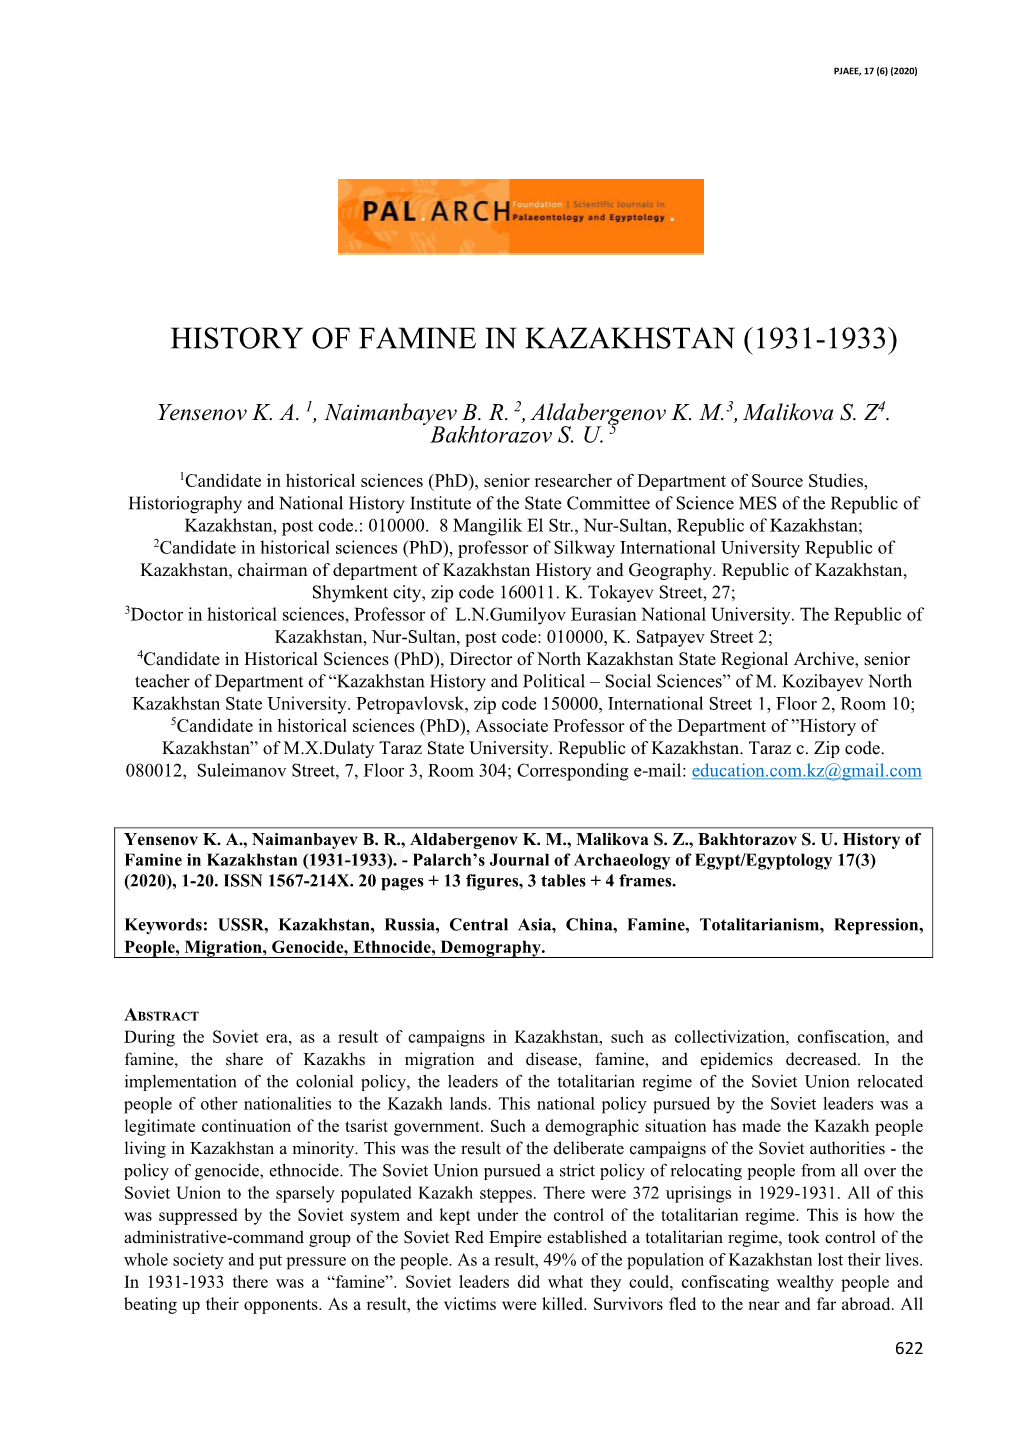 History of Famine in Kazakhstan (1931-1933)